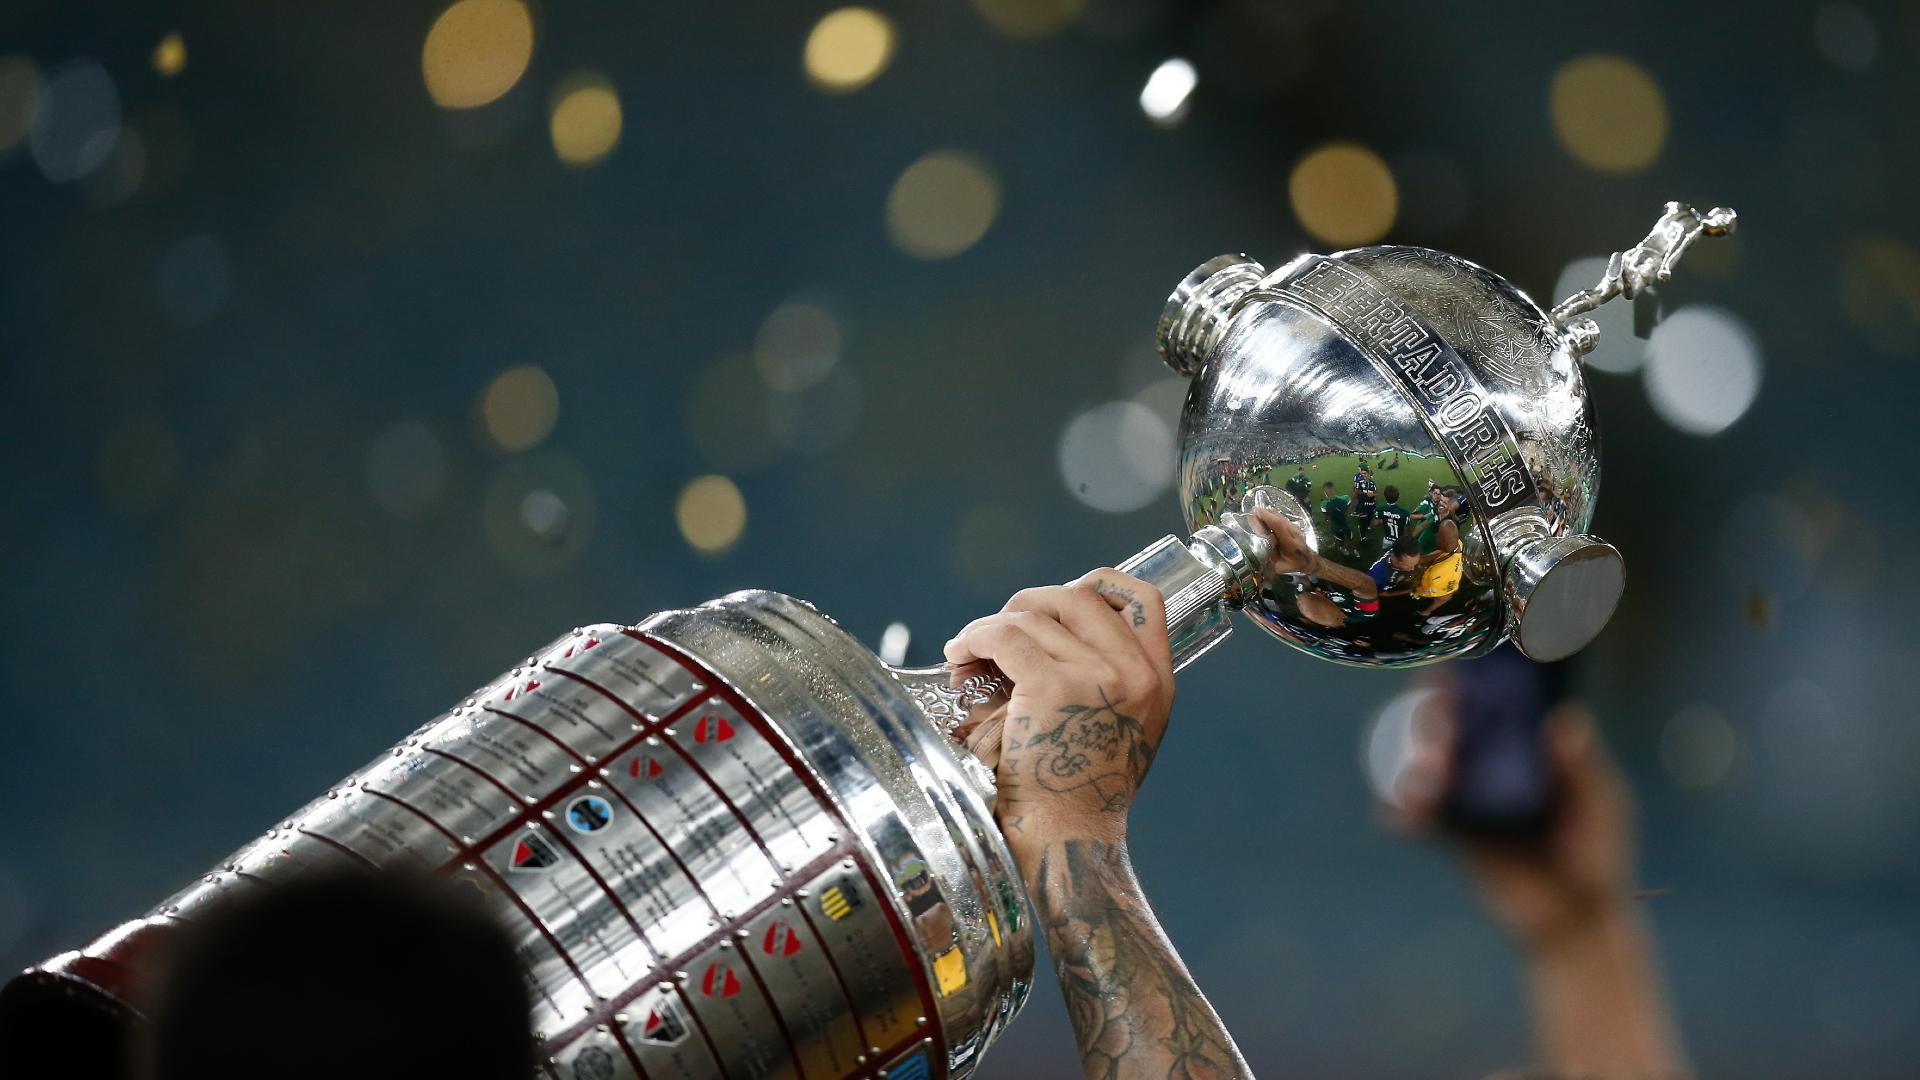 Raio-X da Libertadores: o que esperar dos rivais de Inter, Athletico-PR e  Flamengo - ESPN